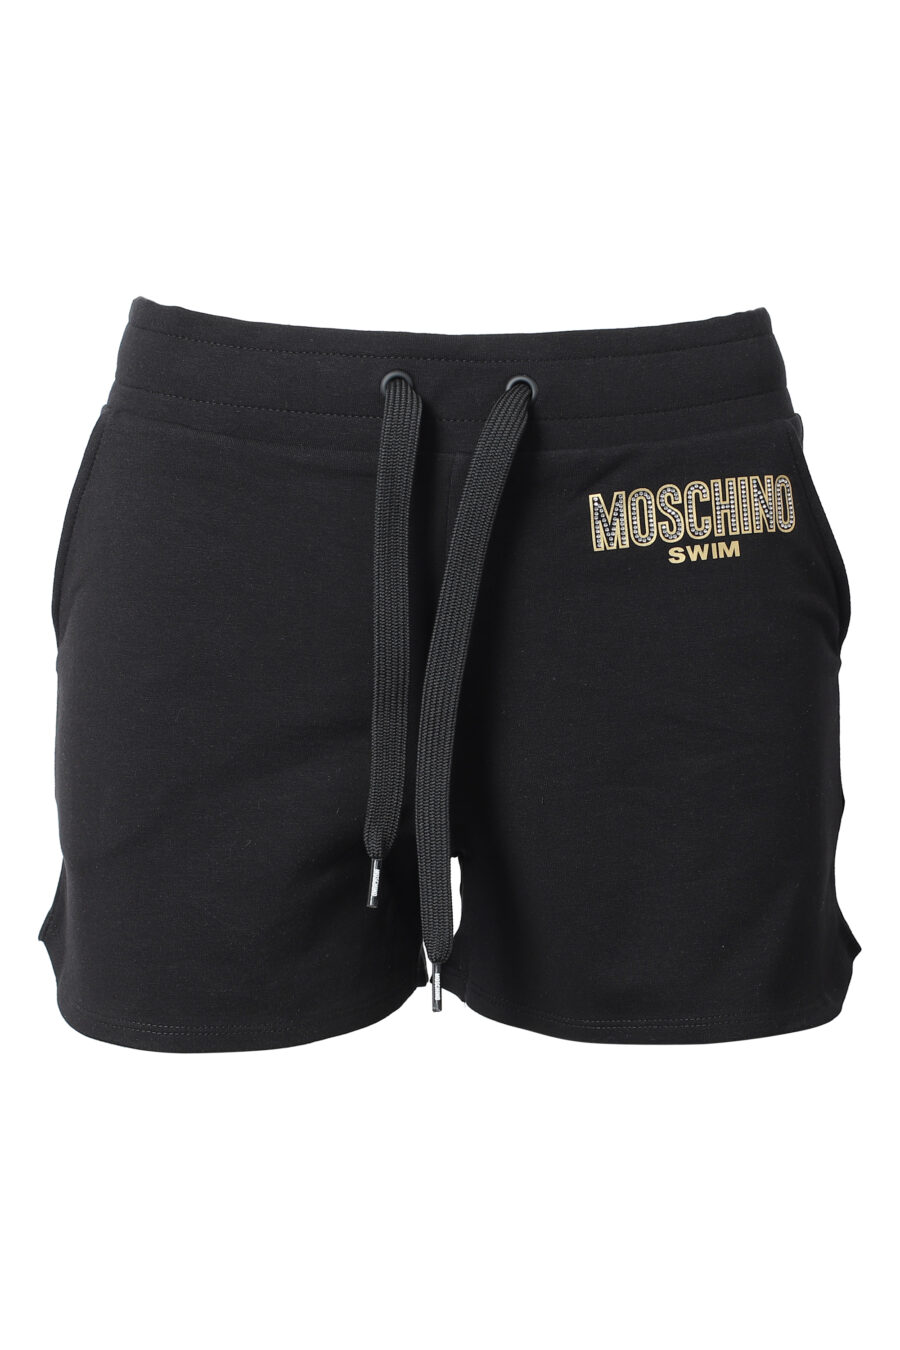 Black shorts with rhinestone logo - IMG 9844